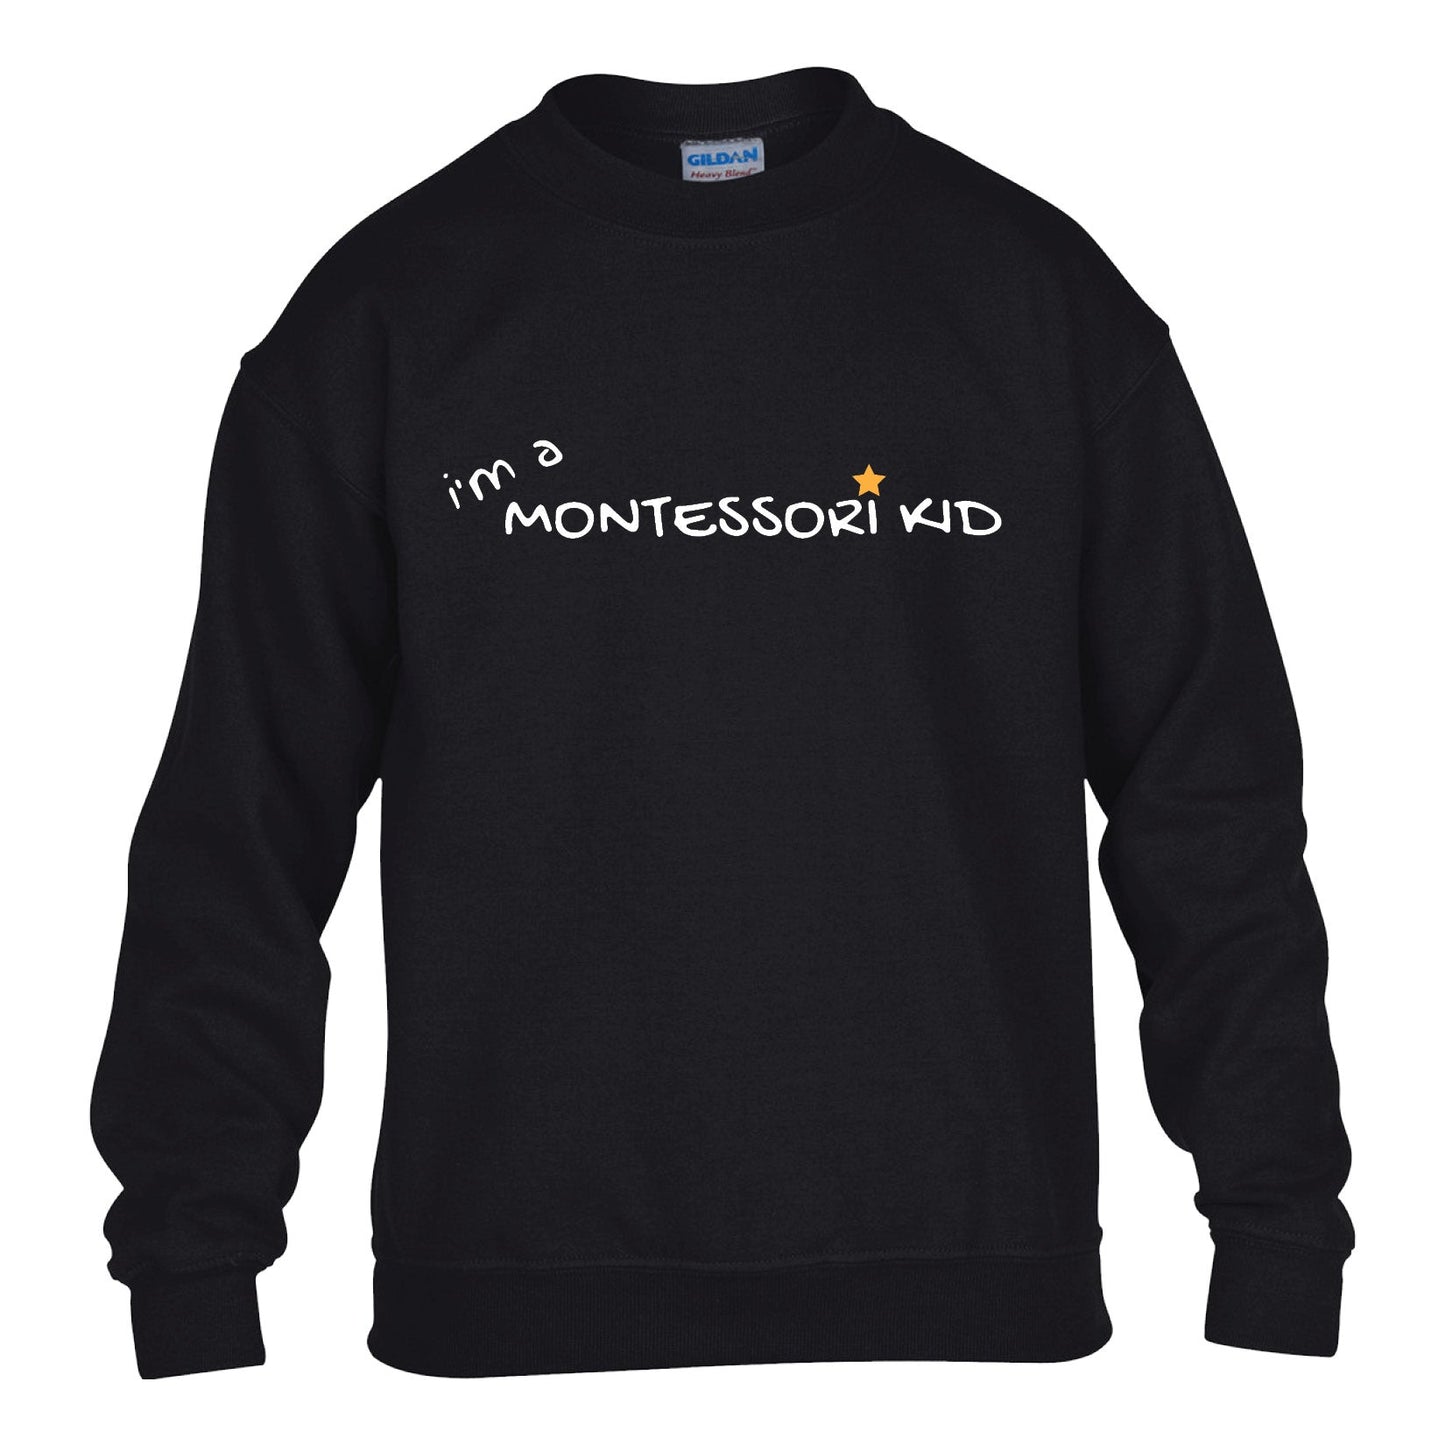 MONTESSORI - I'm a Montessori Kid Crewneck Sweater